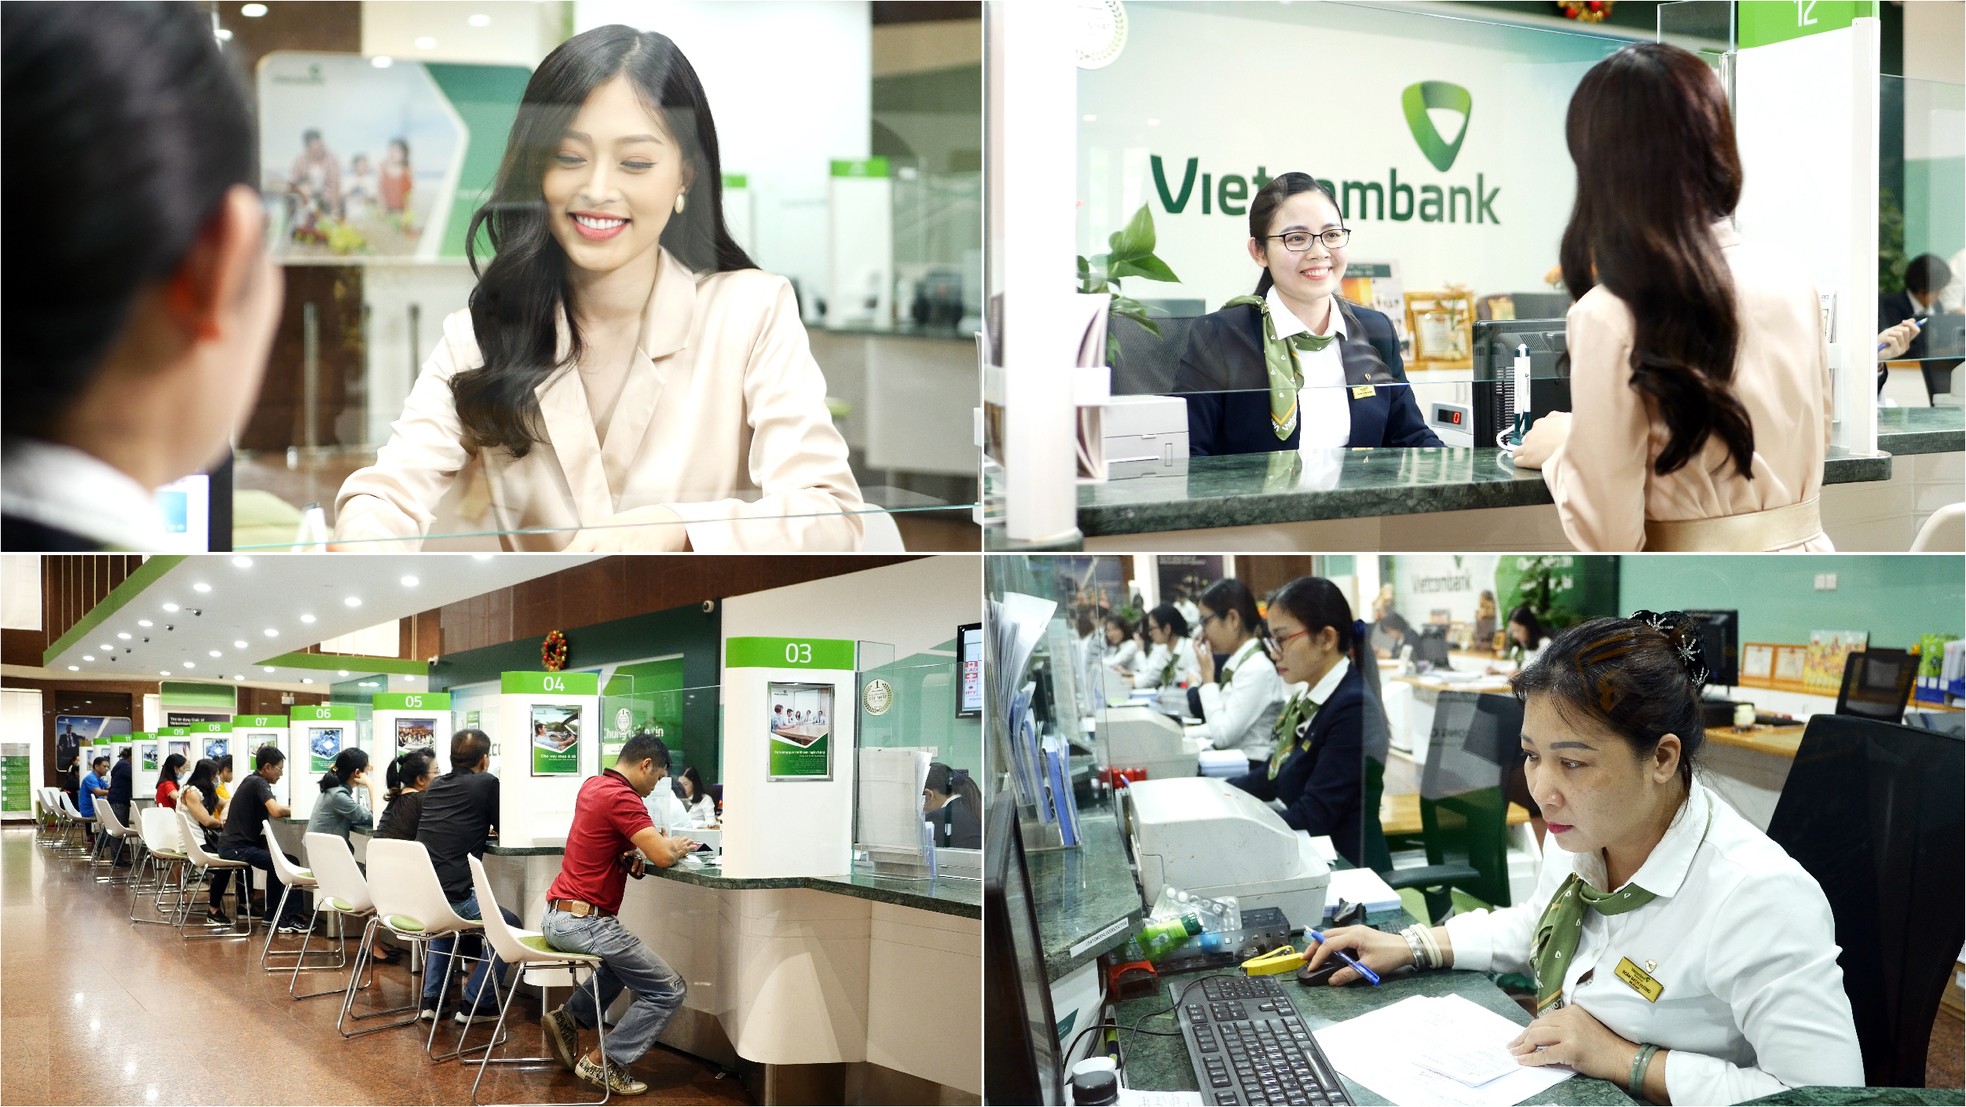 Ngày Thẻ Việt Nam 2020 - Thúc đẩy việc thanh toán không dùng tiền mặt ảnh 7